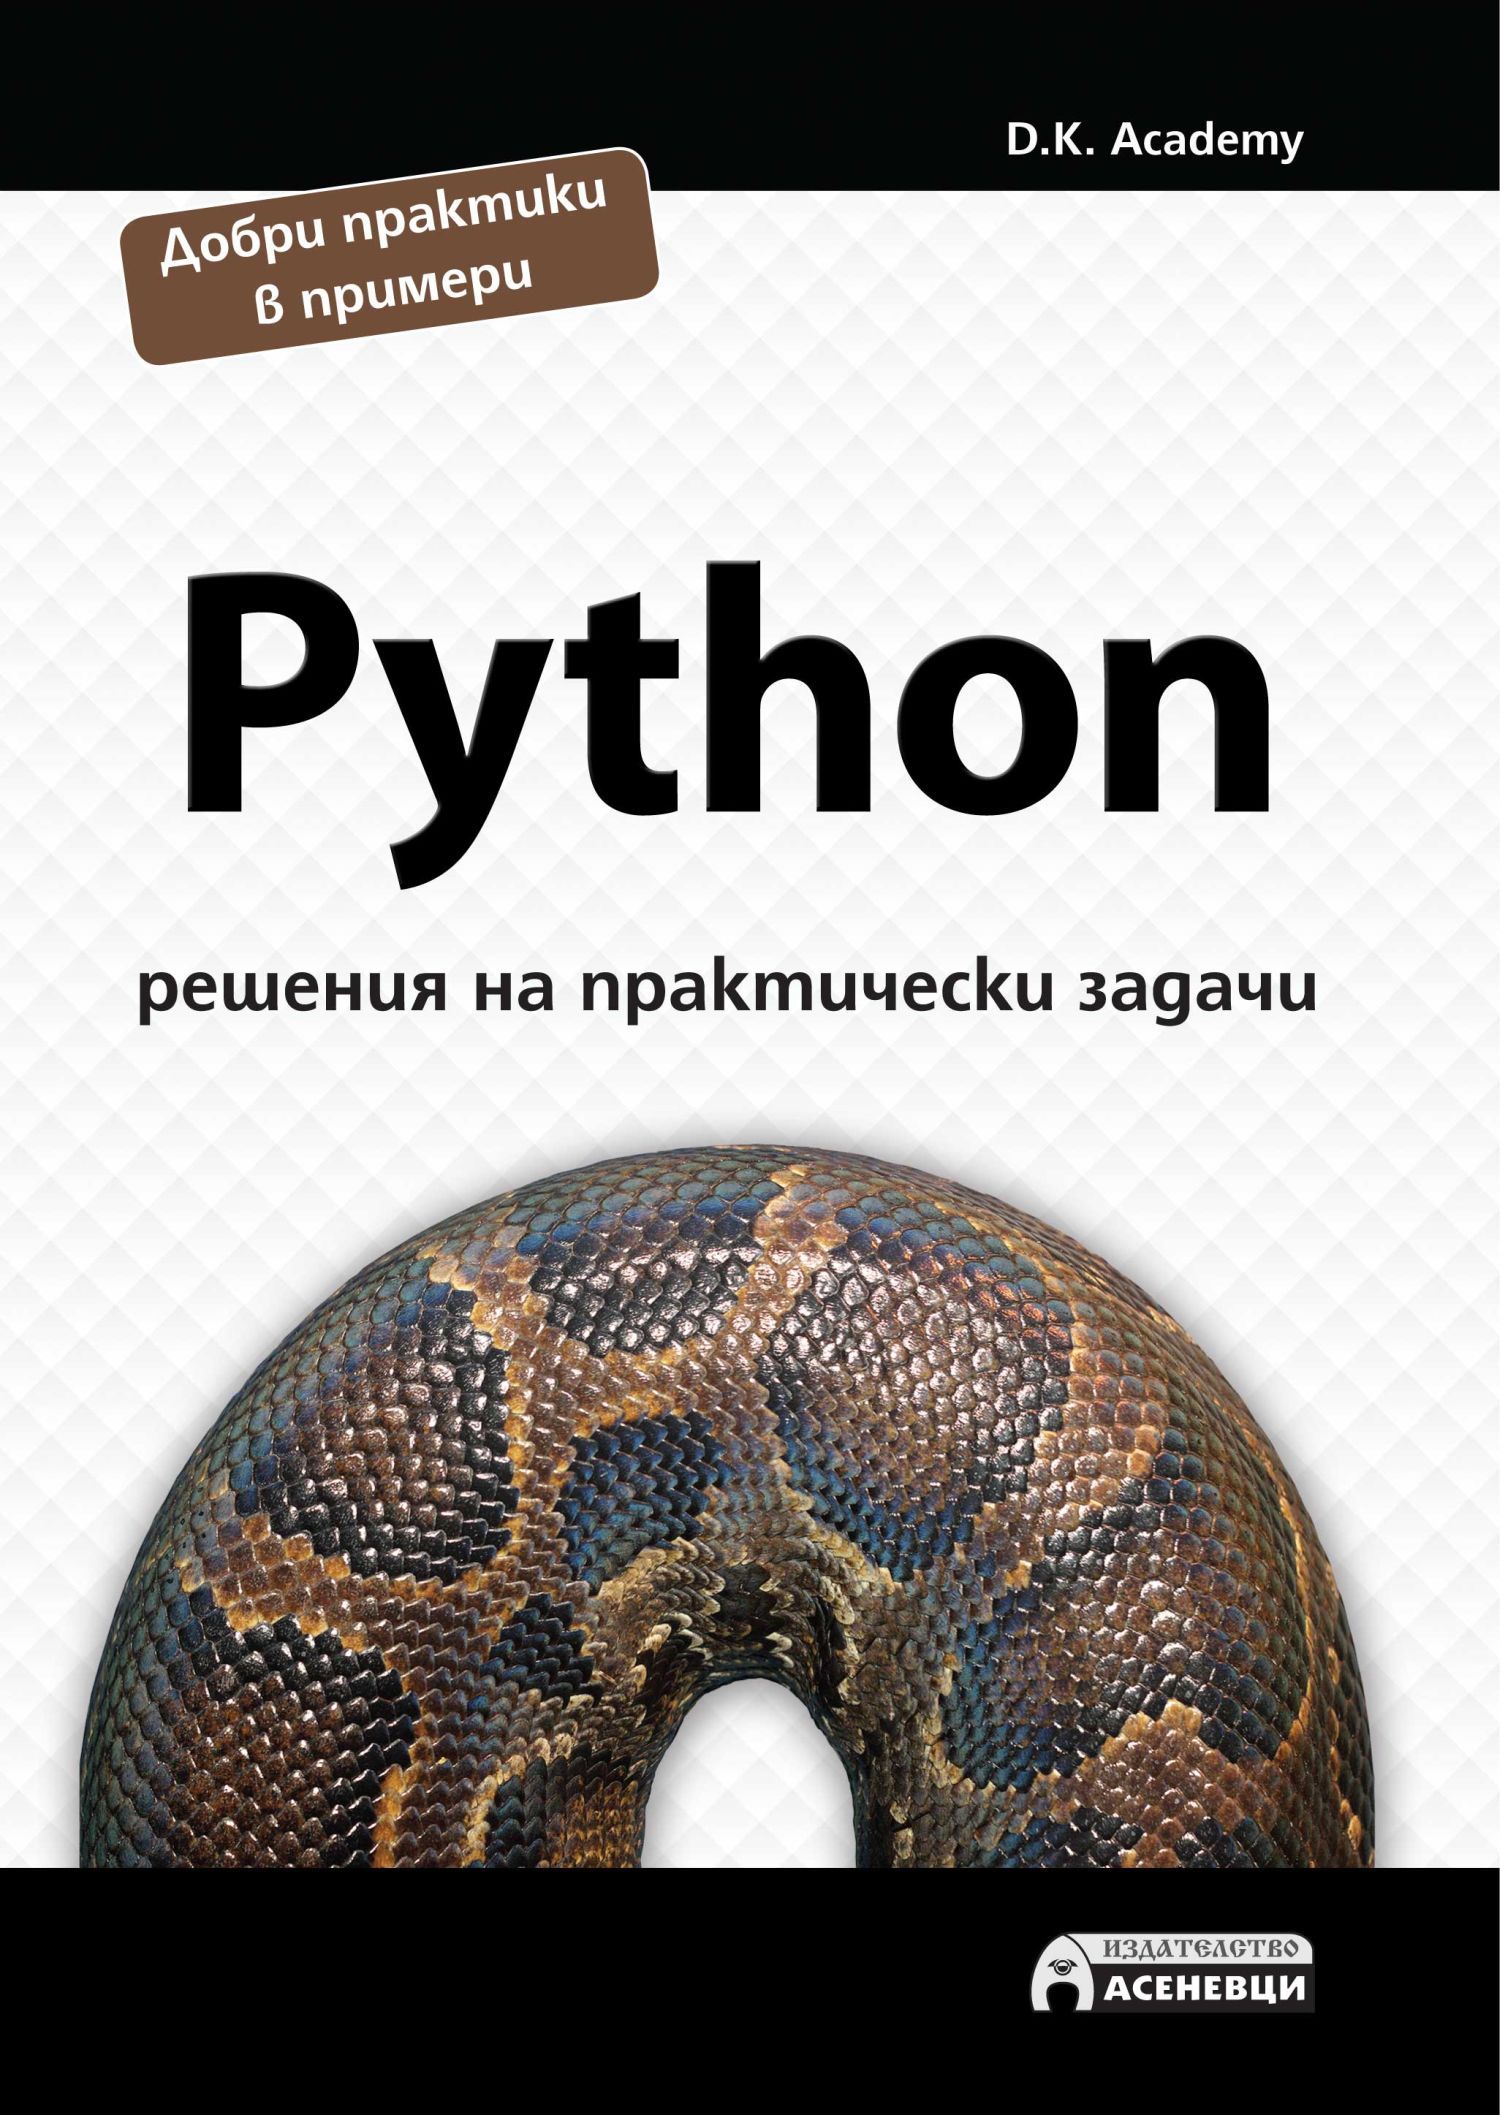 Решить удав. Задачи питон. Книги по Python для начинающих. Задания для питона для начинающих. Задачи на питоне с решением.